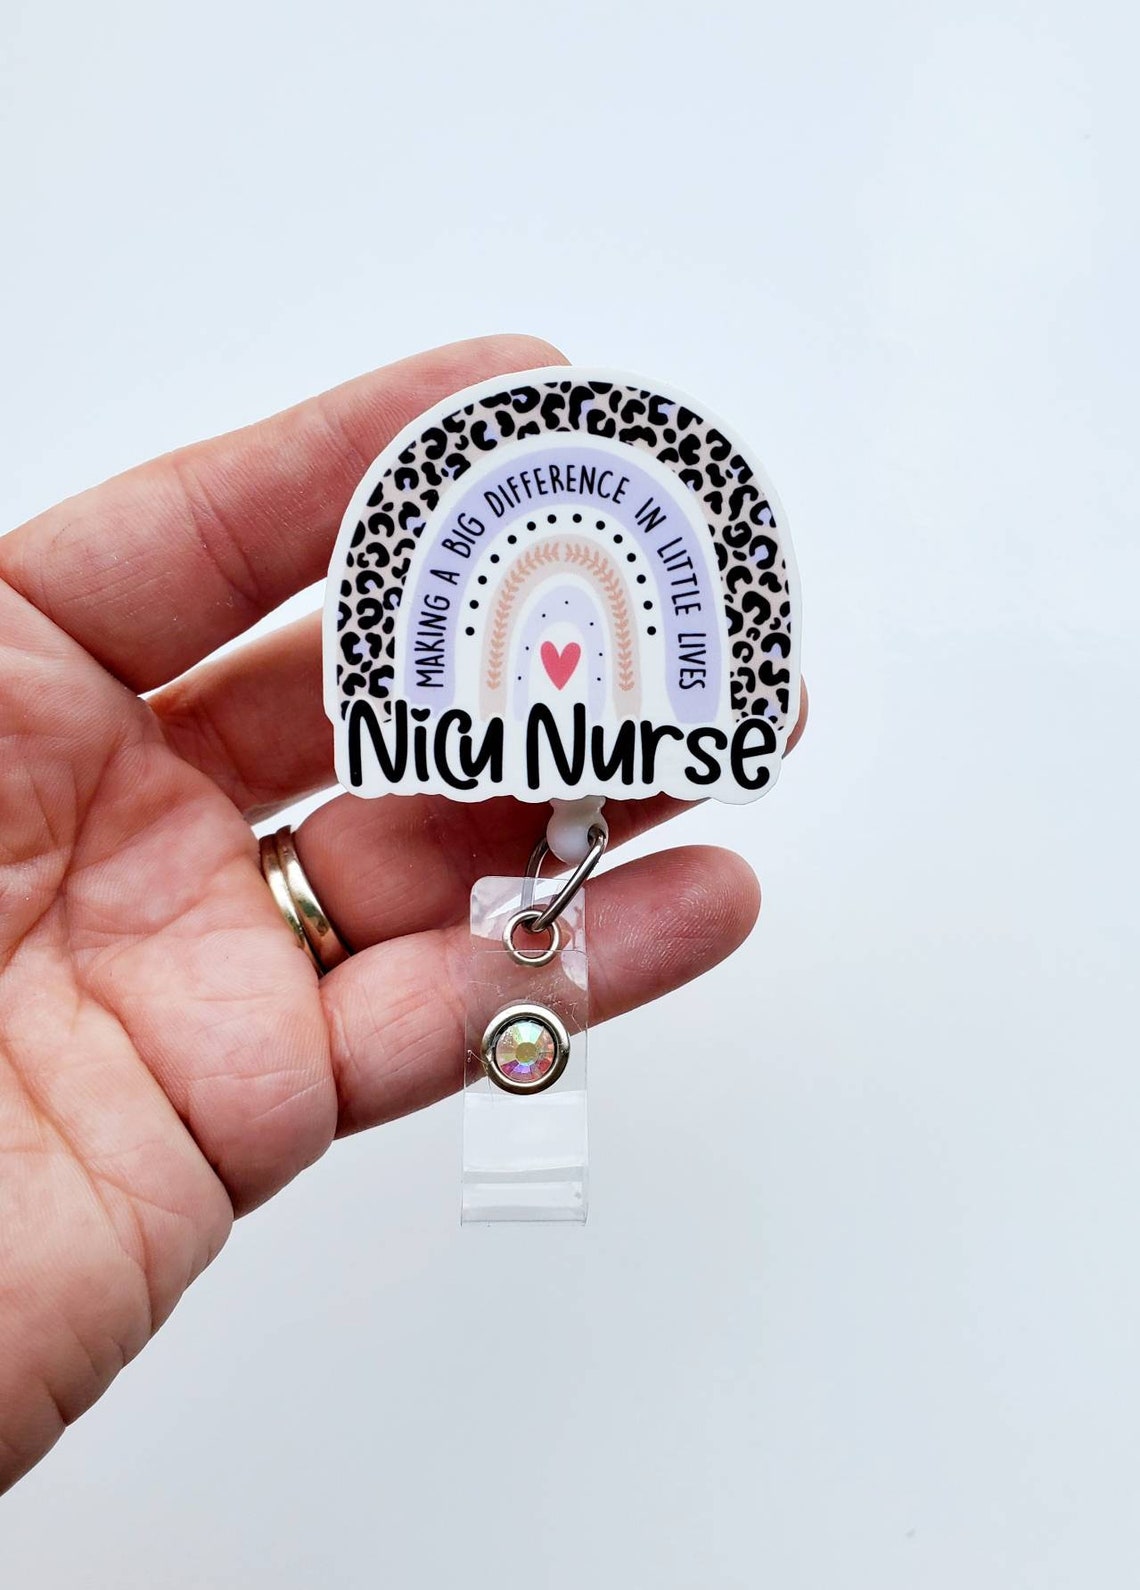 Nicu Nurse Badge Nicu Nurse Rainbow Badge Nicu Nurse Gift - Etsy